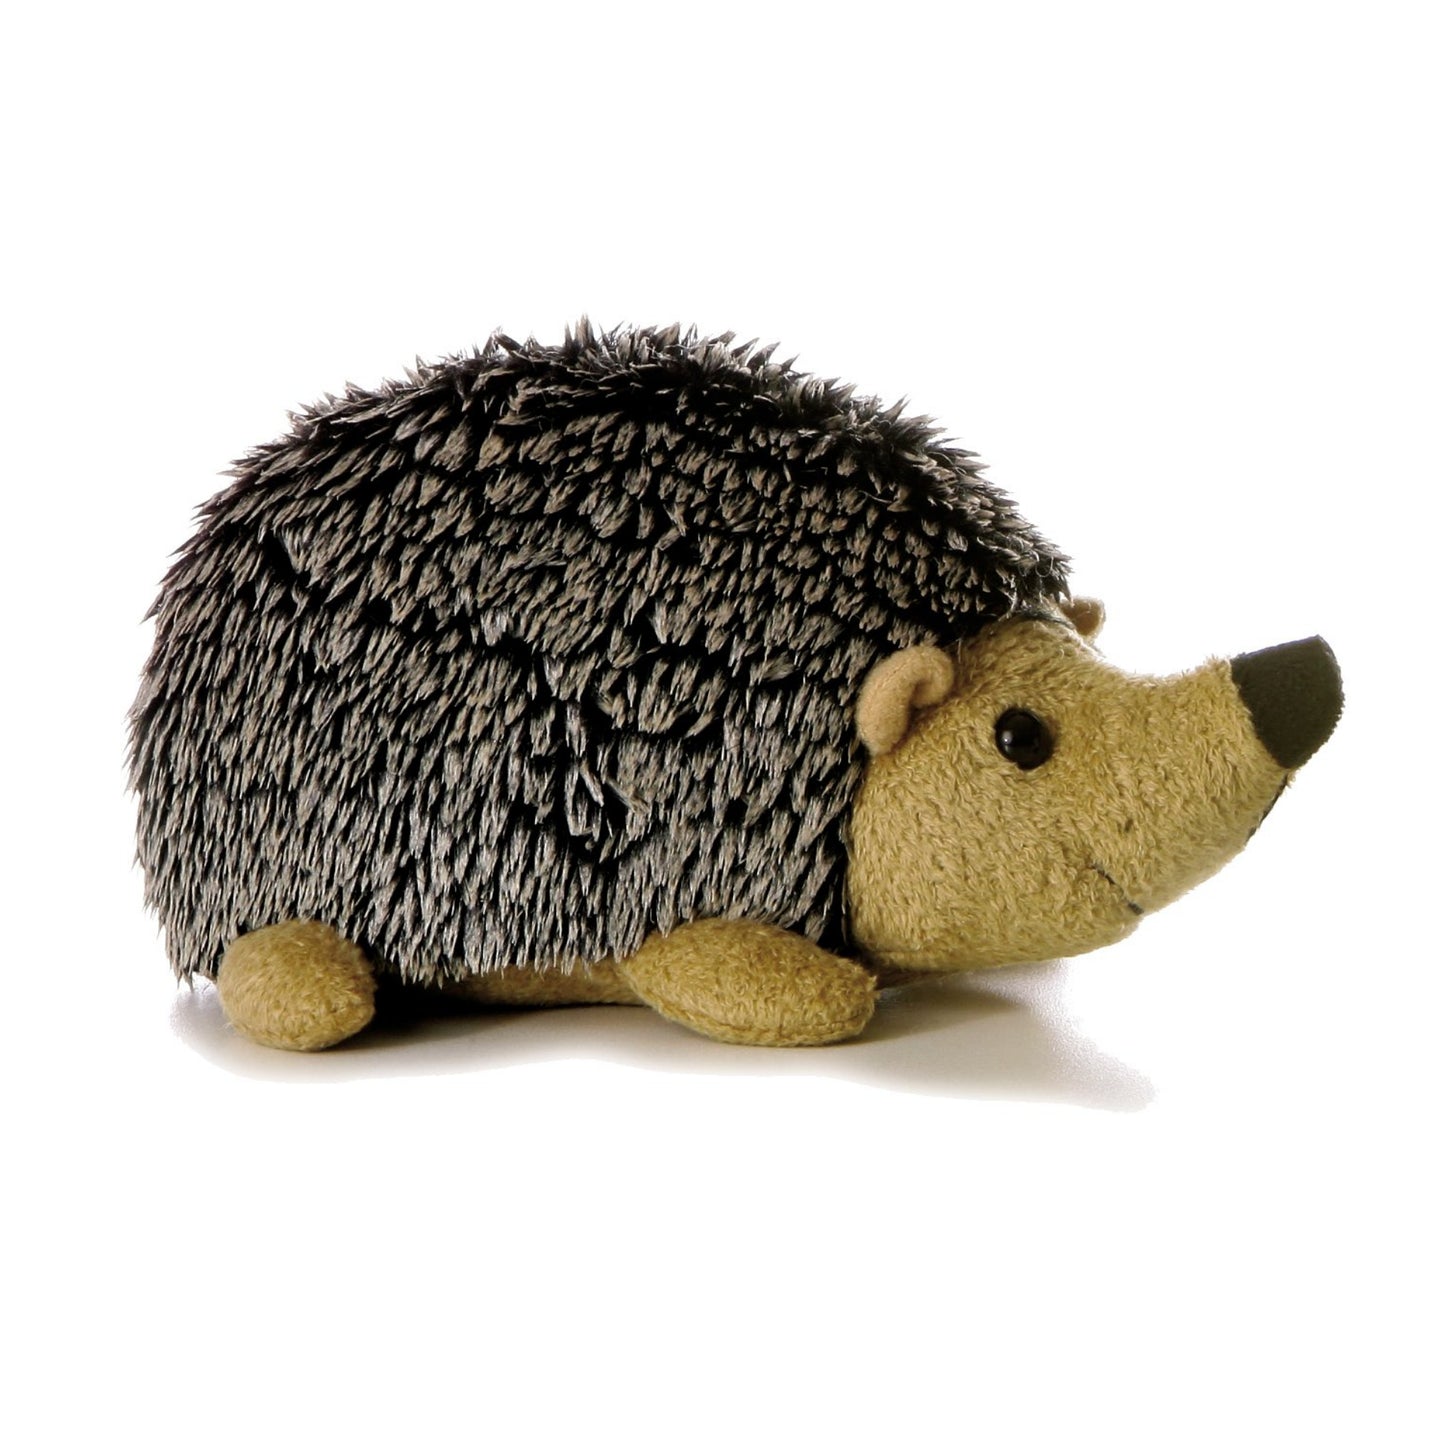 Howie the Hedgehog 8" Flopsie Plush